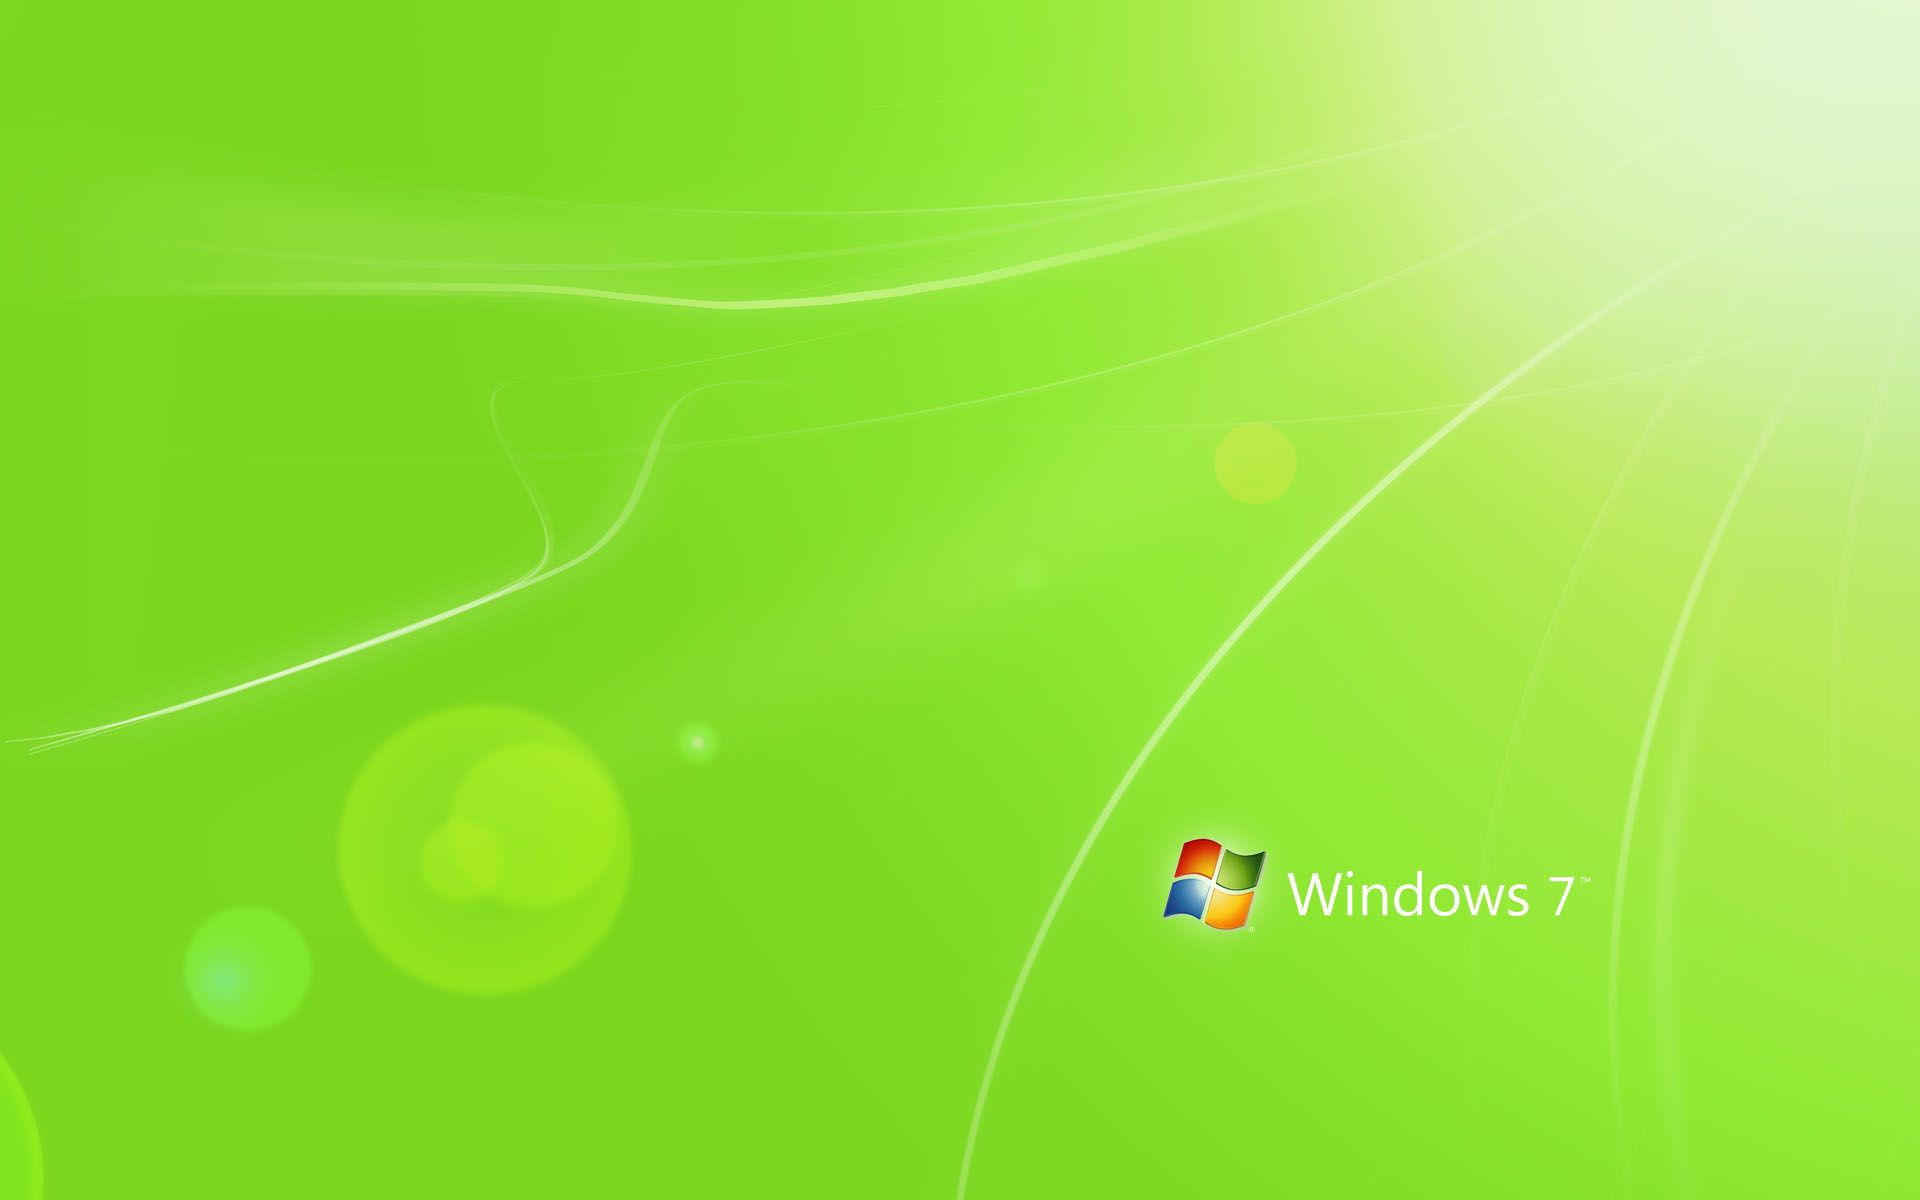 Windows-7-Green-Wallpaper-High-Resolution.jpg